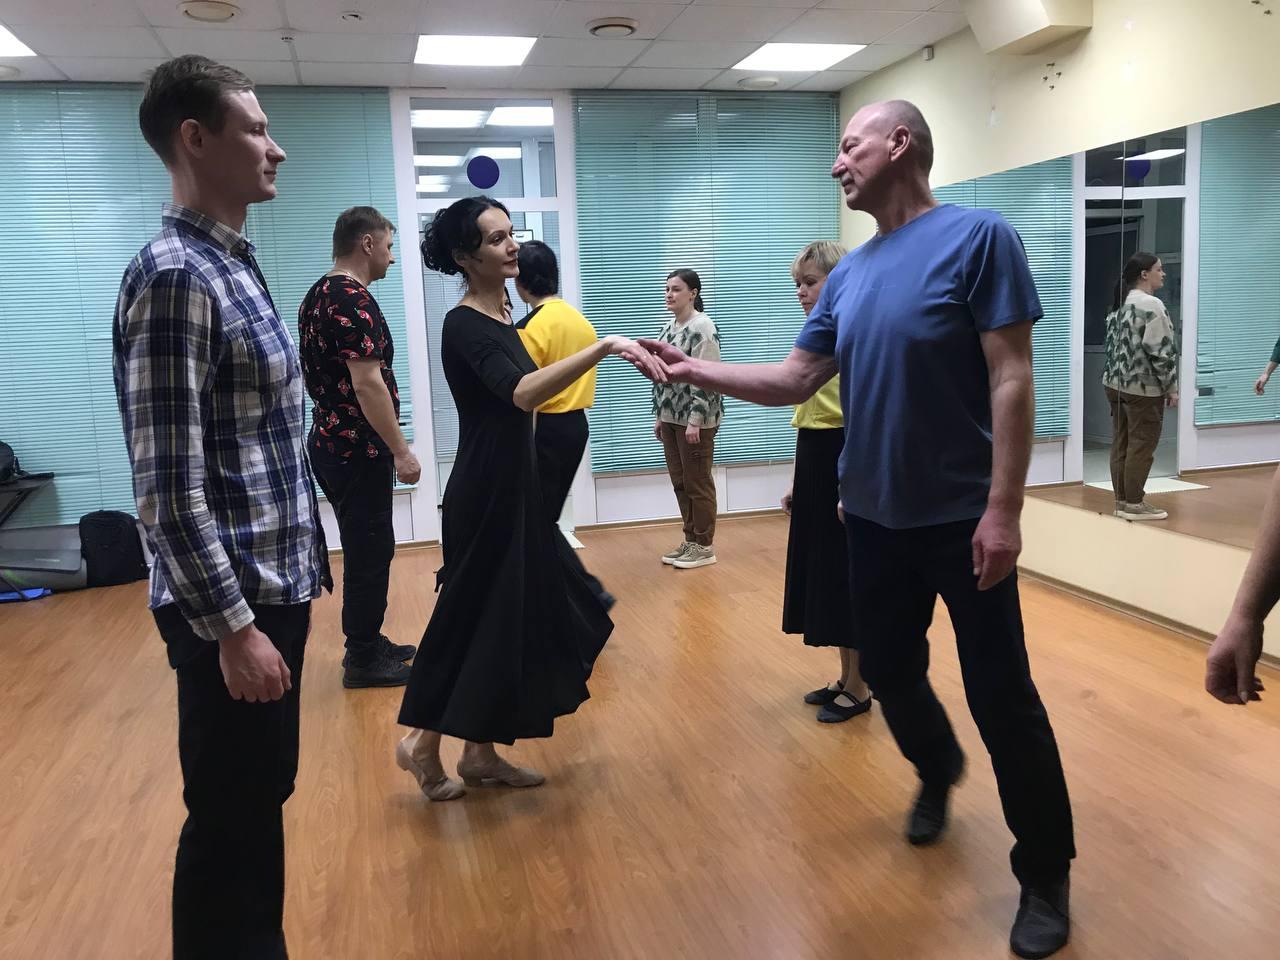 Открытый урок танцев для дебютантов Весеннего бала прошел в Коломне